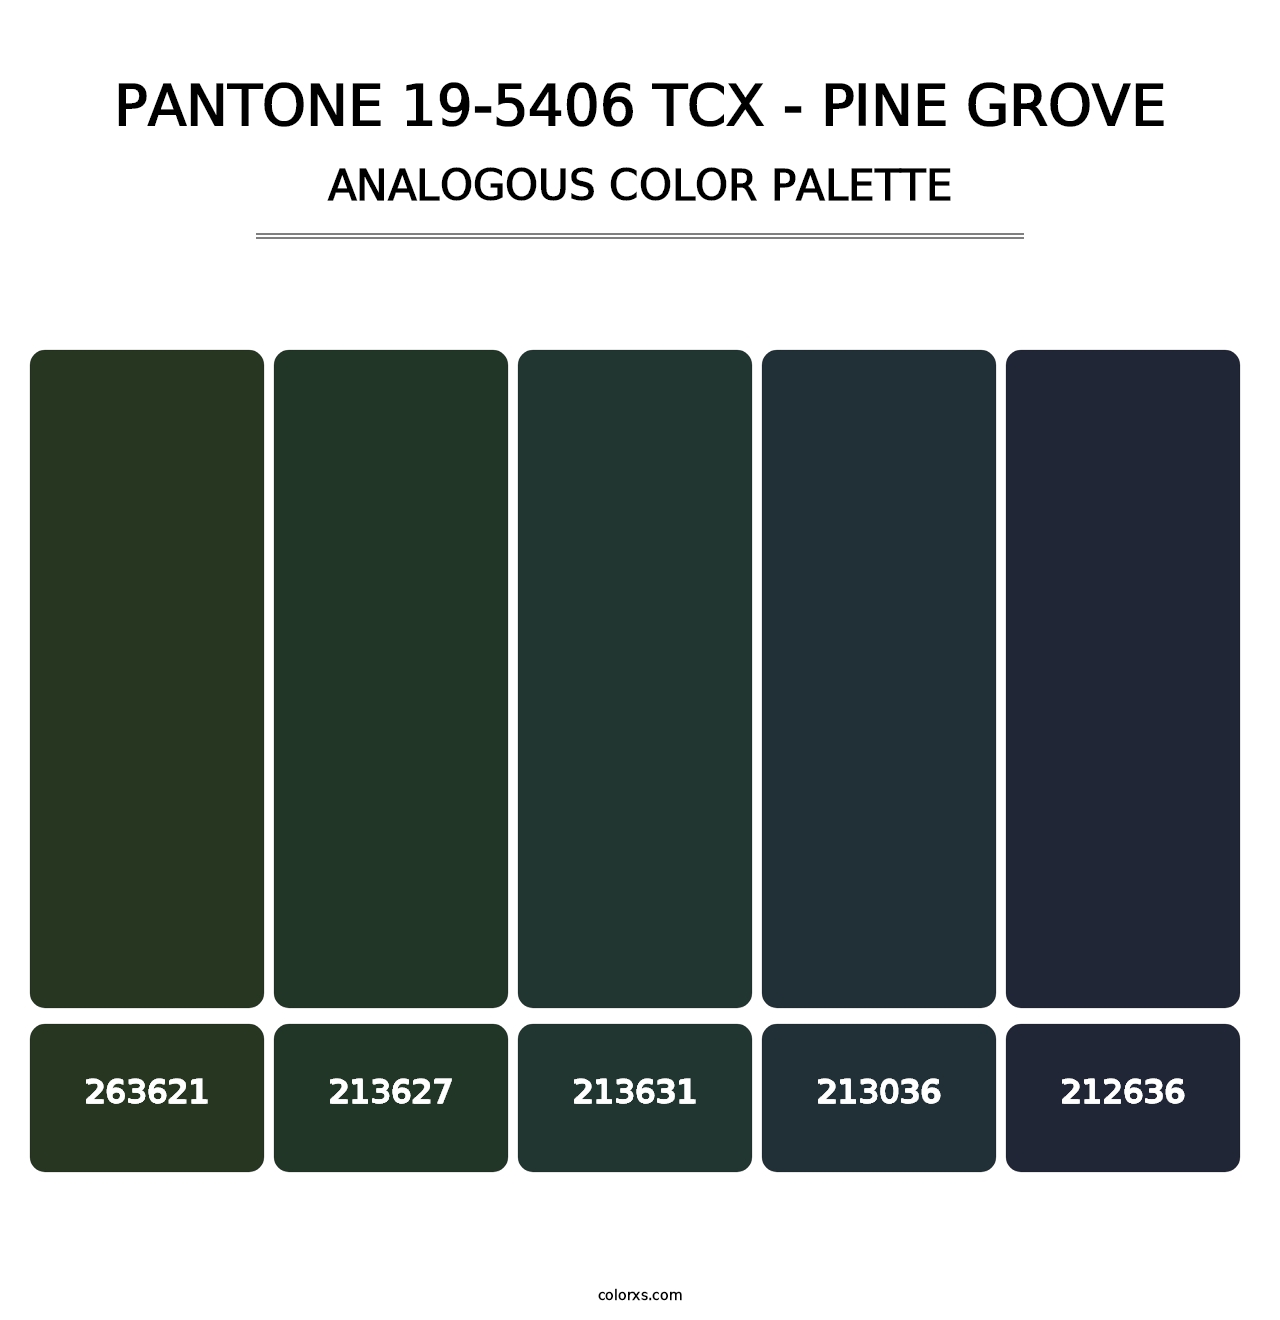 PANTONE 19-5406 TCX - Pine Grove - Analogous Color Palette